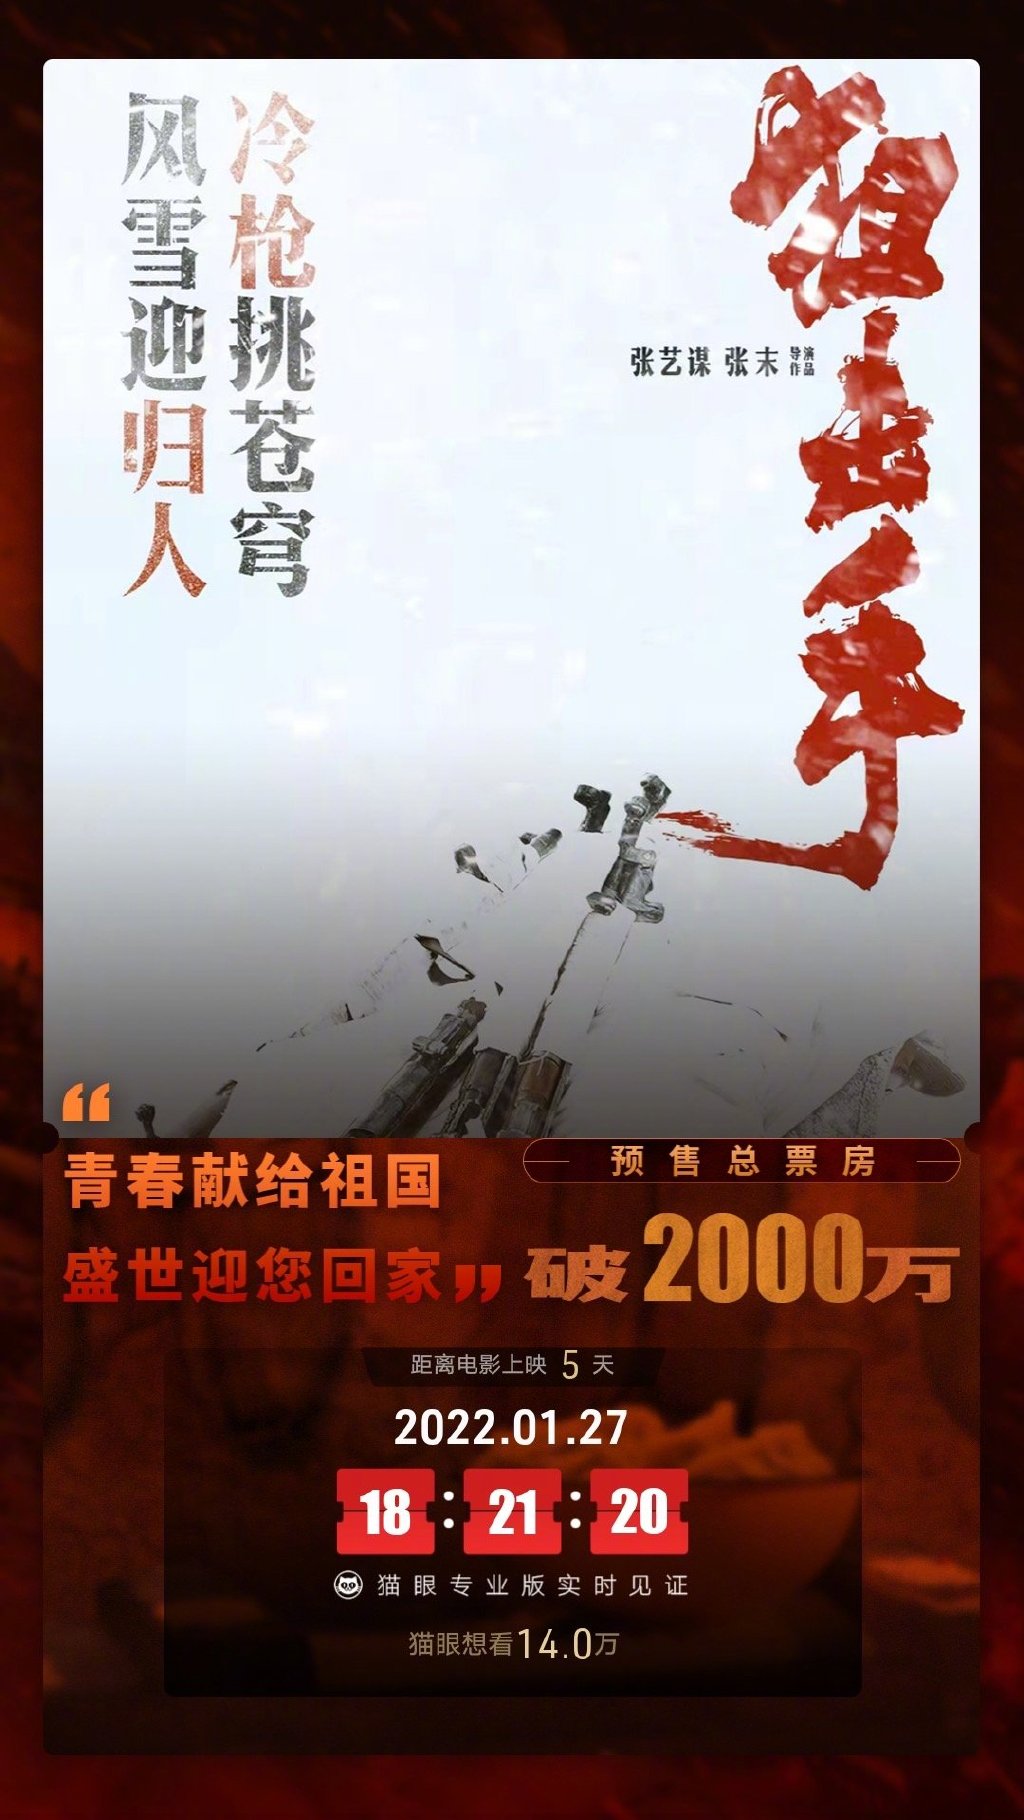 《狙击手》预售总票房破2000万 为张艺谋首部进军春节档的电影